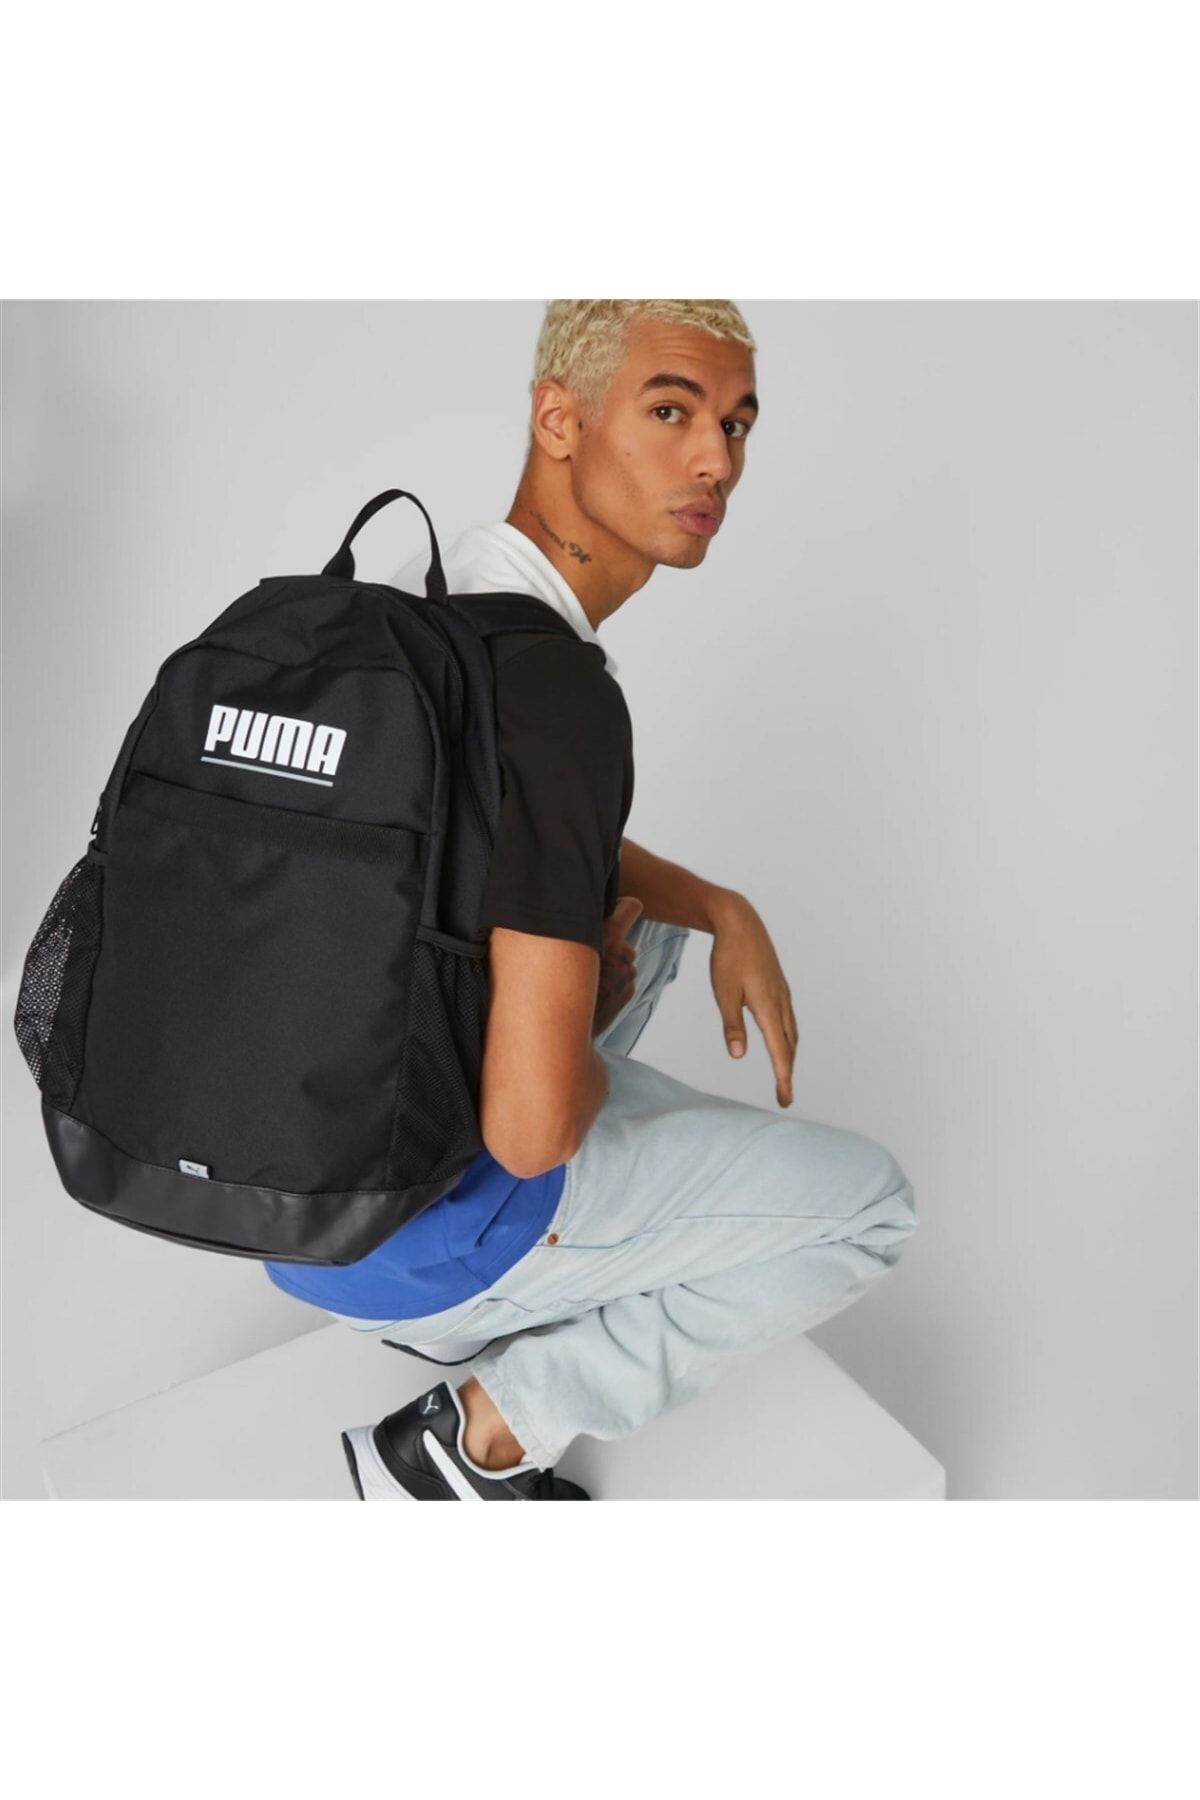 Puma Plus Backpack Black Backpack 079615-01 - Trendyol